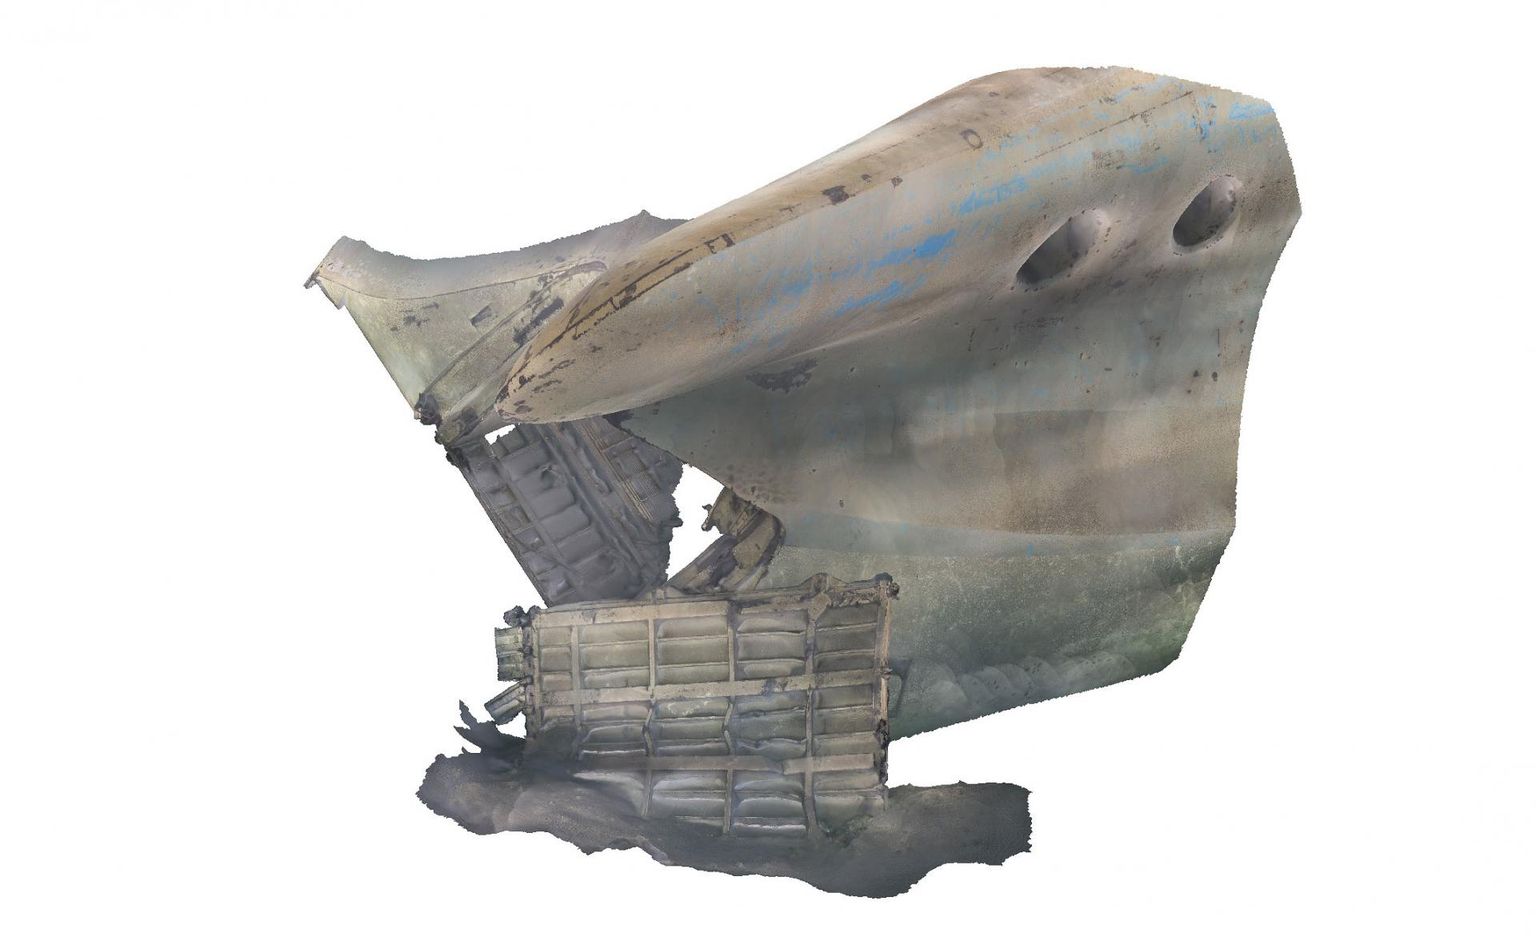 Одной из целей экспедиции было создание 3D-модели останков судна. На фото первоначальная версия носовой части парома.